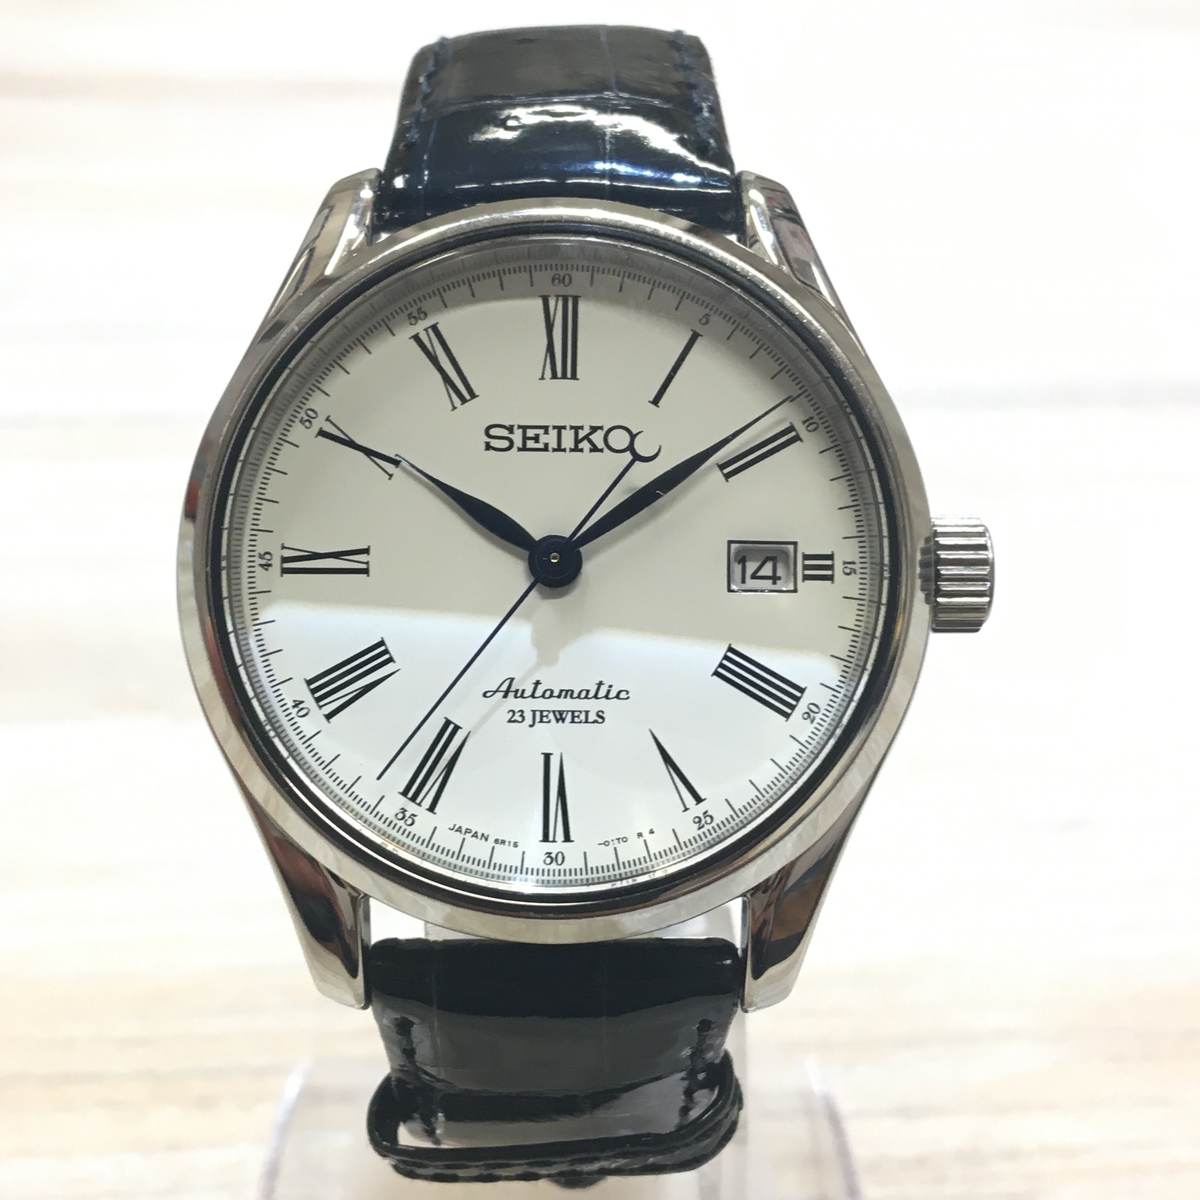 セイコーのレサージュ SARX019 6R15-02P0 琺瑯ダイヤル 自動巻き 腕時計の買取実績です。